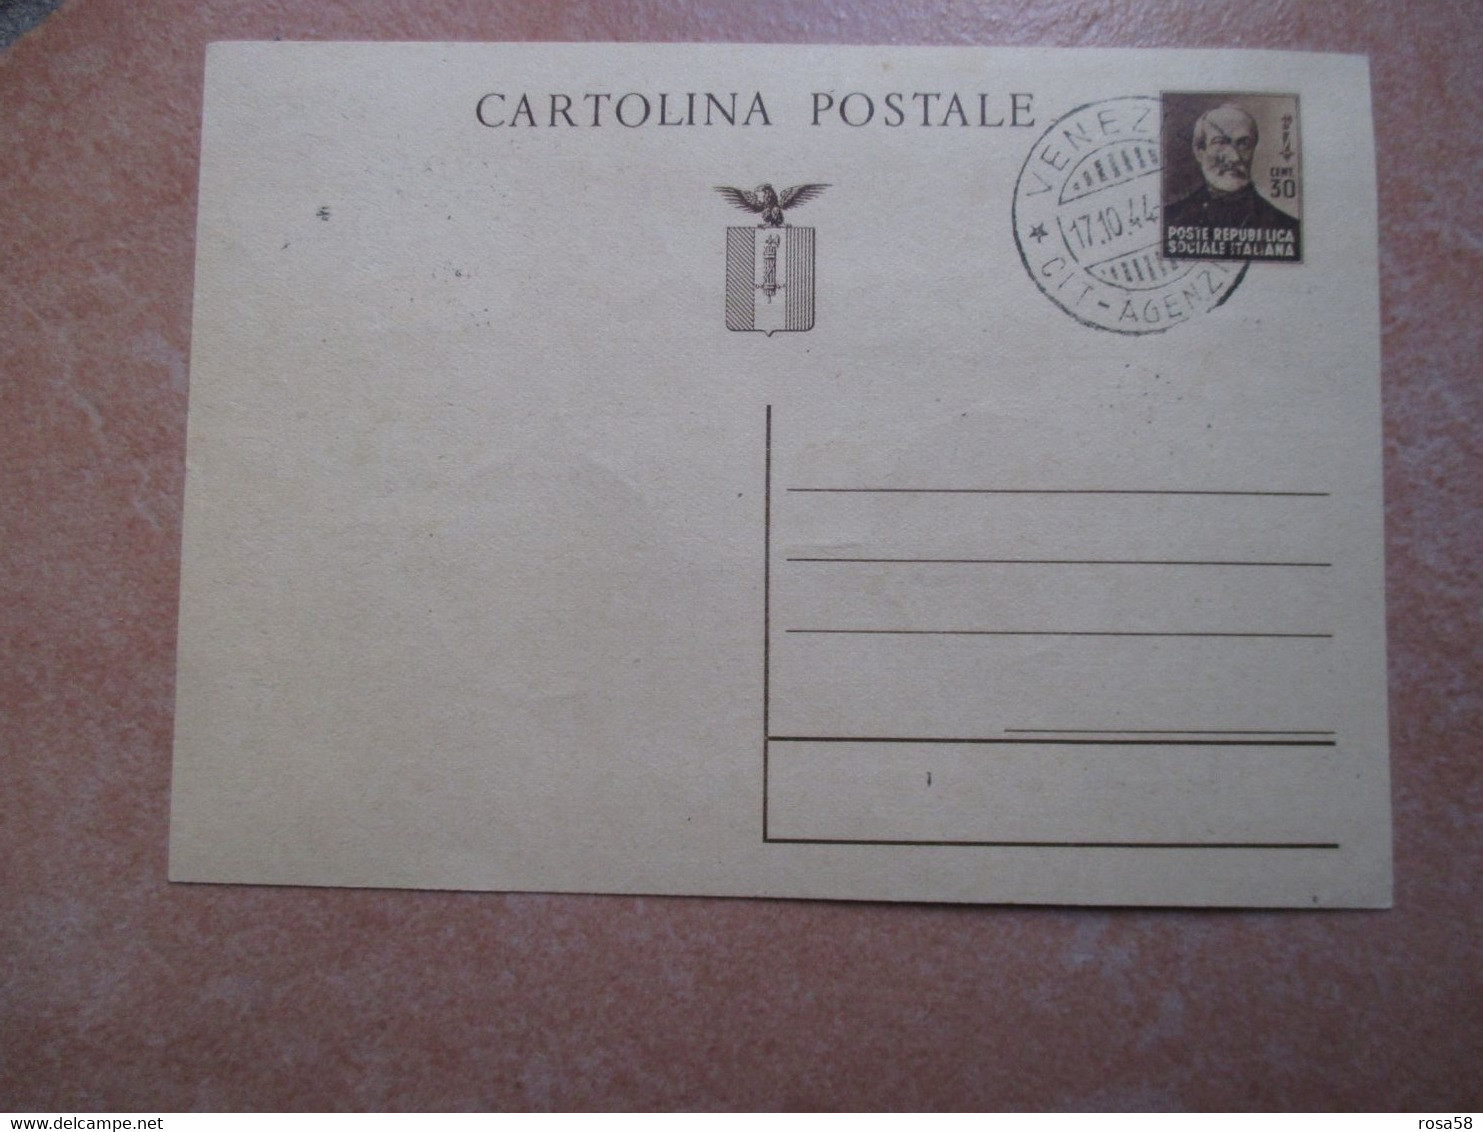 GC 17.10.1944 Cartolina POSTALE MAZZINI Supporto Serie Monumenti N.9 Valori Differenti Timbro Città Agenzia Postale - Interi Postali